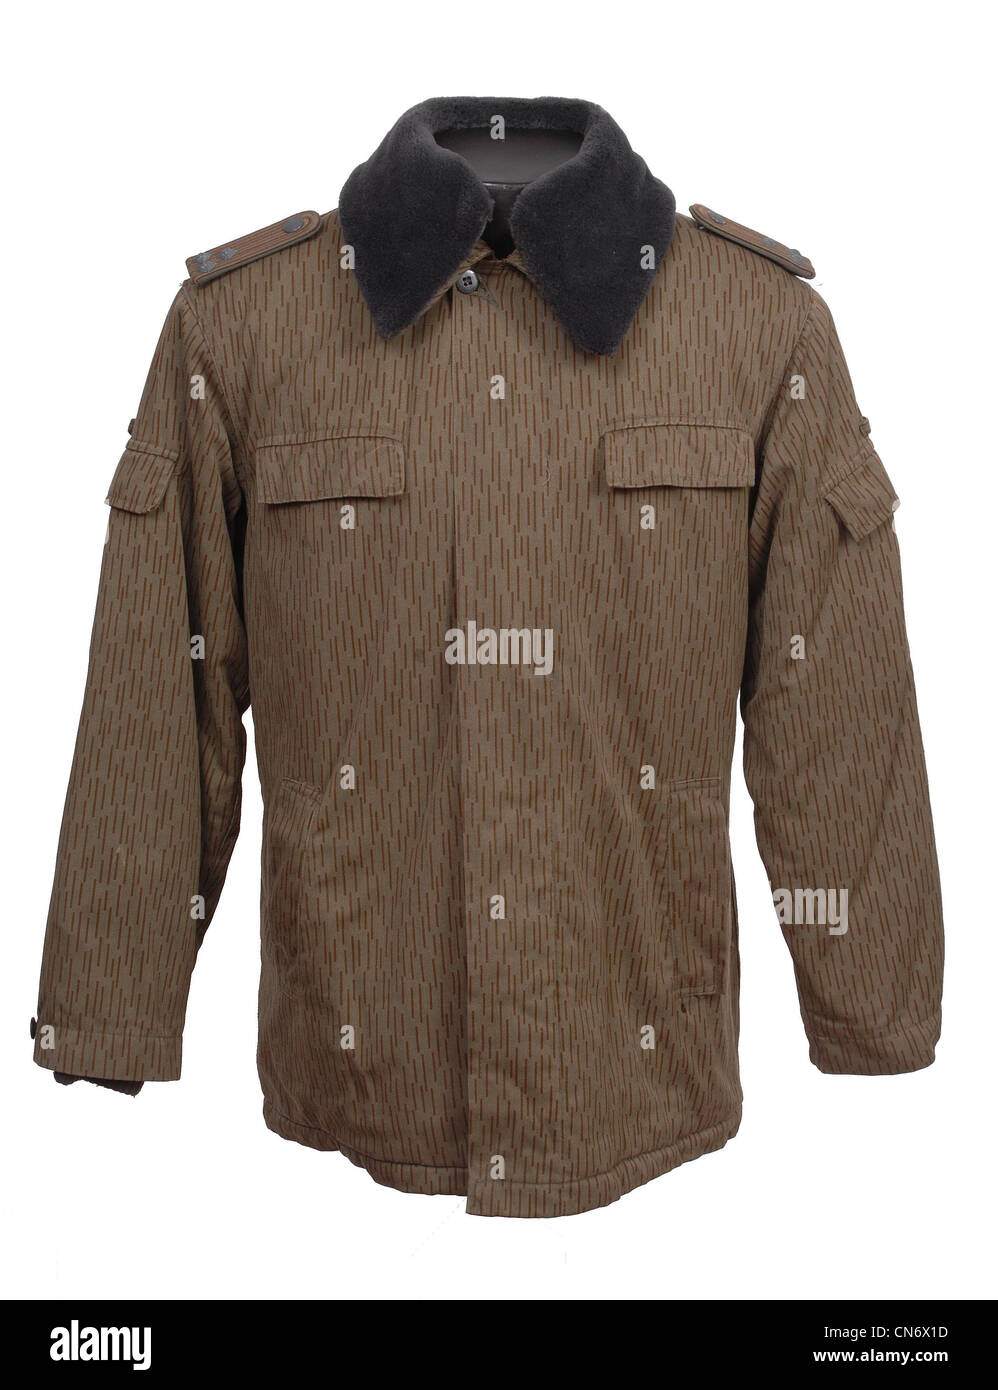 Abbigliamento camouflage come utilizzati dalle forze militari tedesco orientale camouflage giacca invernale Foto Stock